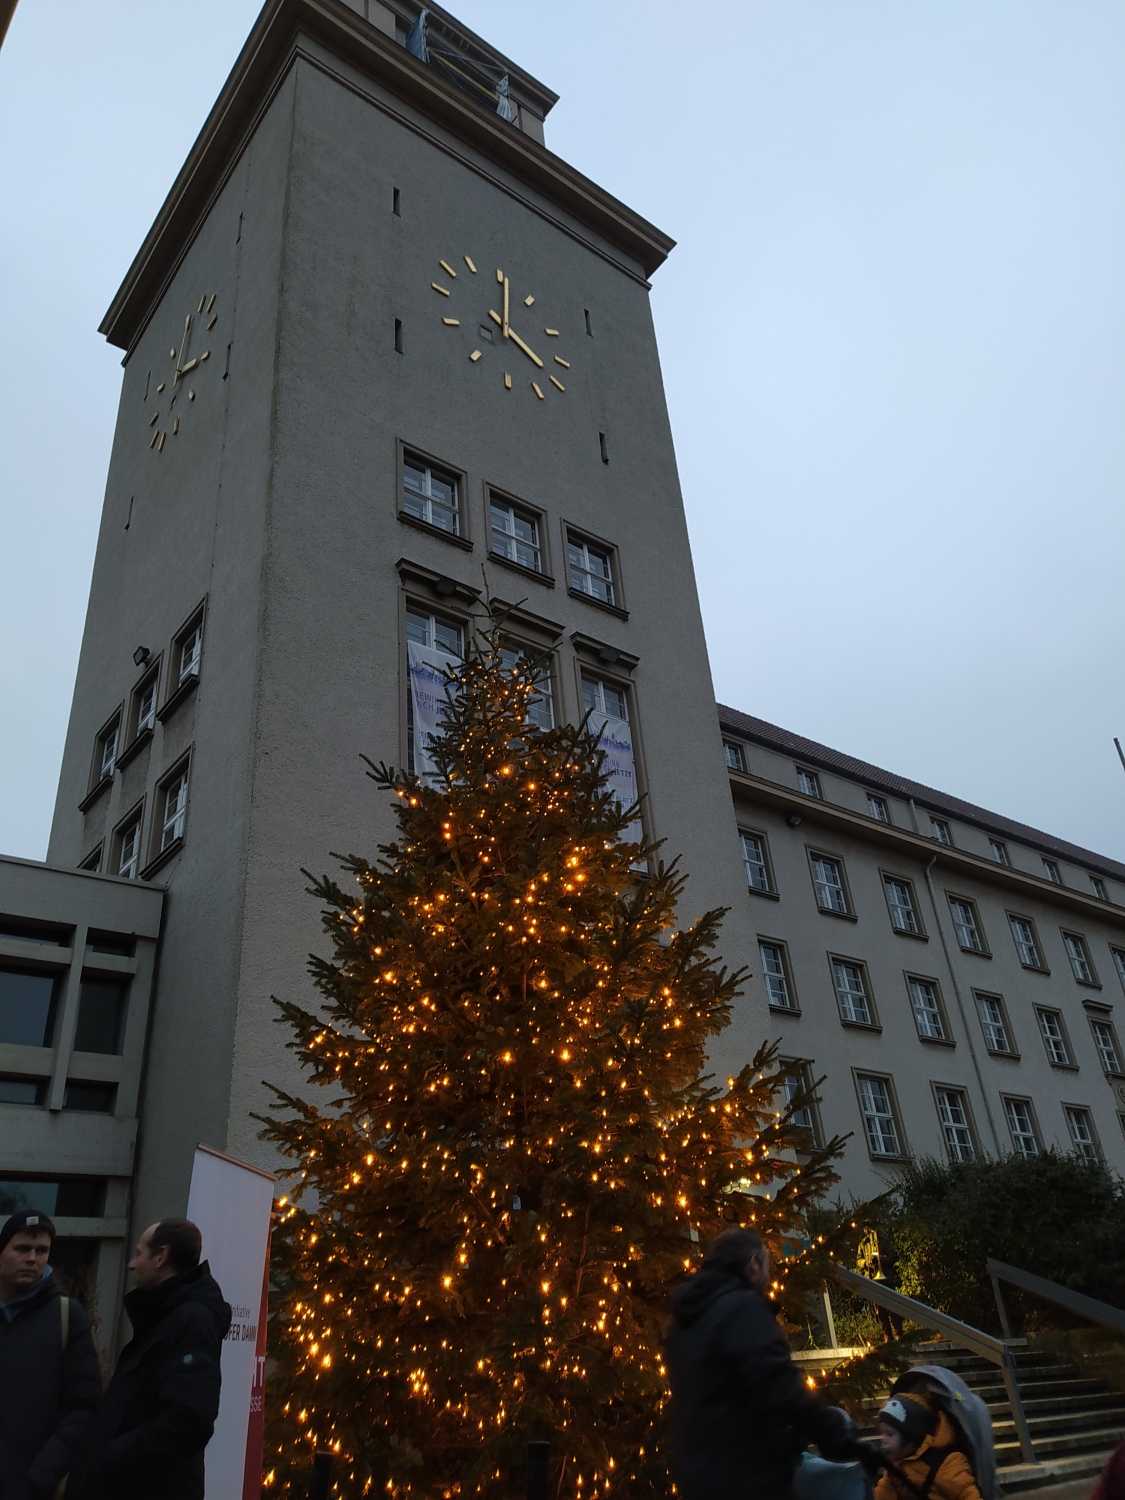 Foto im Hochformat mit dem Turm des Rathauses Tempelhof im Hintergrund, im Vordergrund ist ein beleuchteter Weihnachtsbaum, davor sieht man dunkel ein paar Menschen